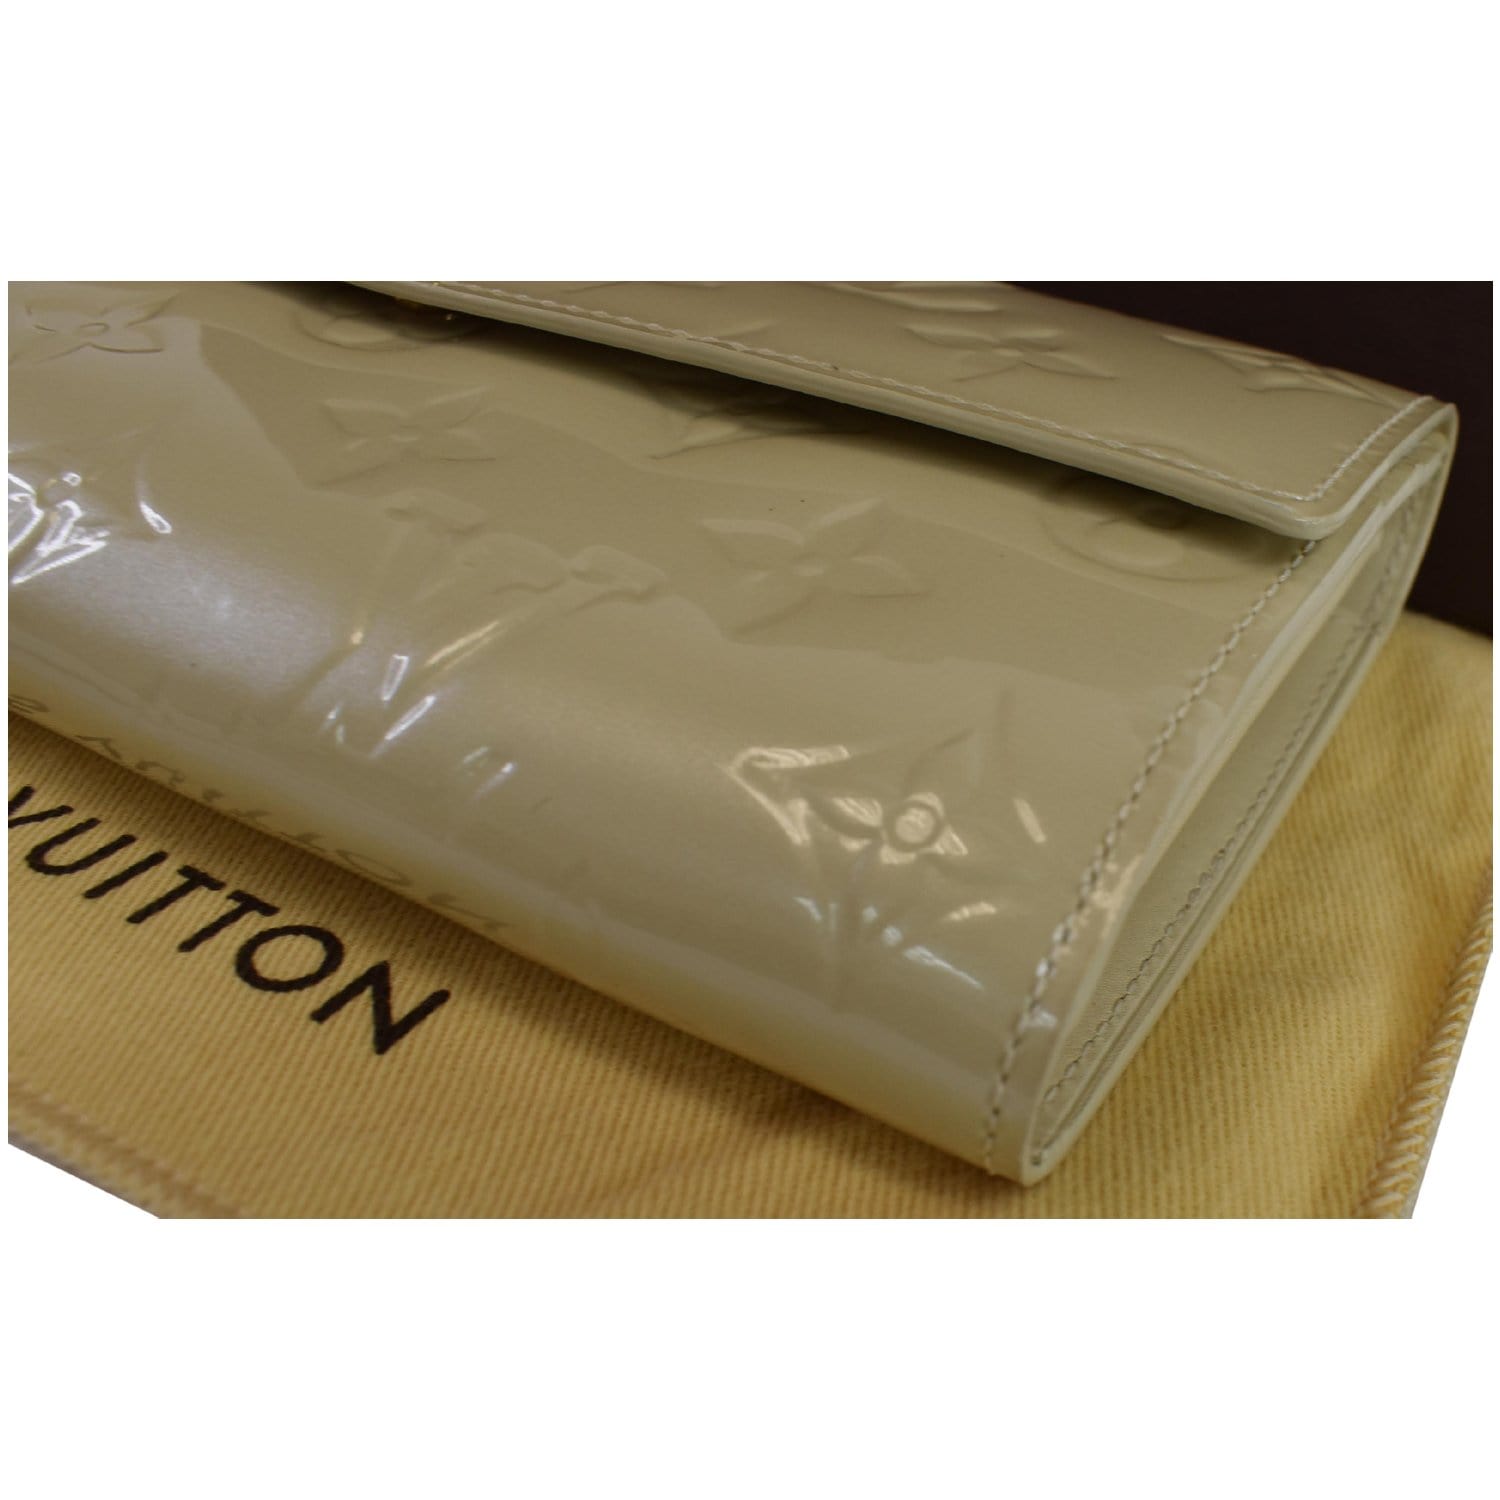 Louis Vuitton Black Monogram Vernis Sarah Compact Wallet - Ann's